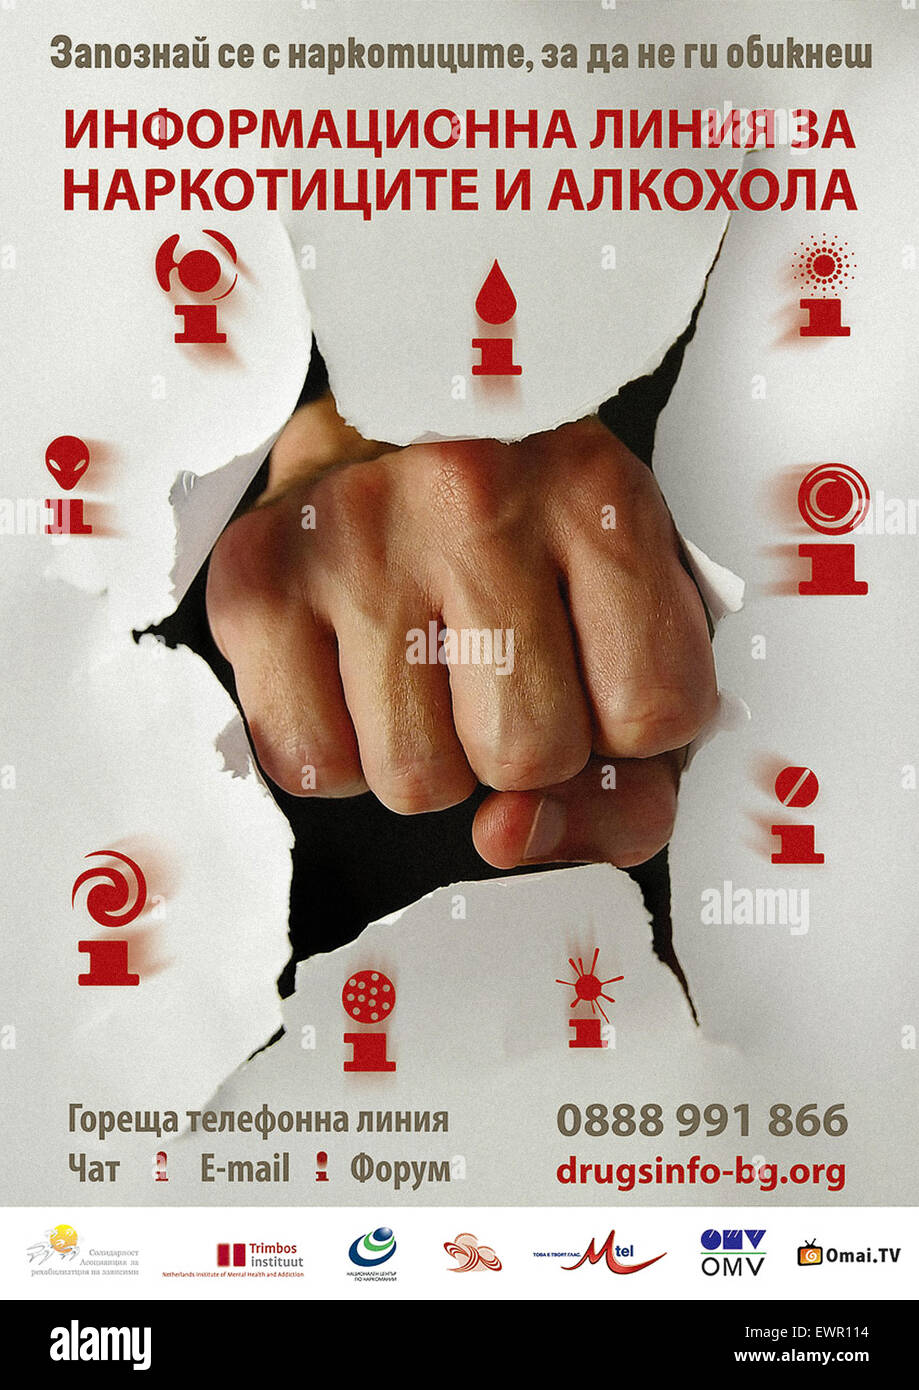 Cartel de la Droga y Alcohol Nacional Búlgara Helpline y sitio web fue lanzado en 2009. Consulte la descripción para obtener más información. Foto de stock